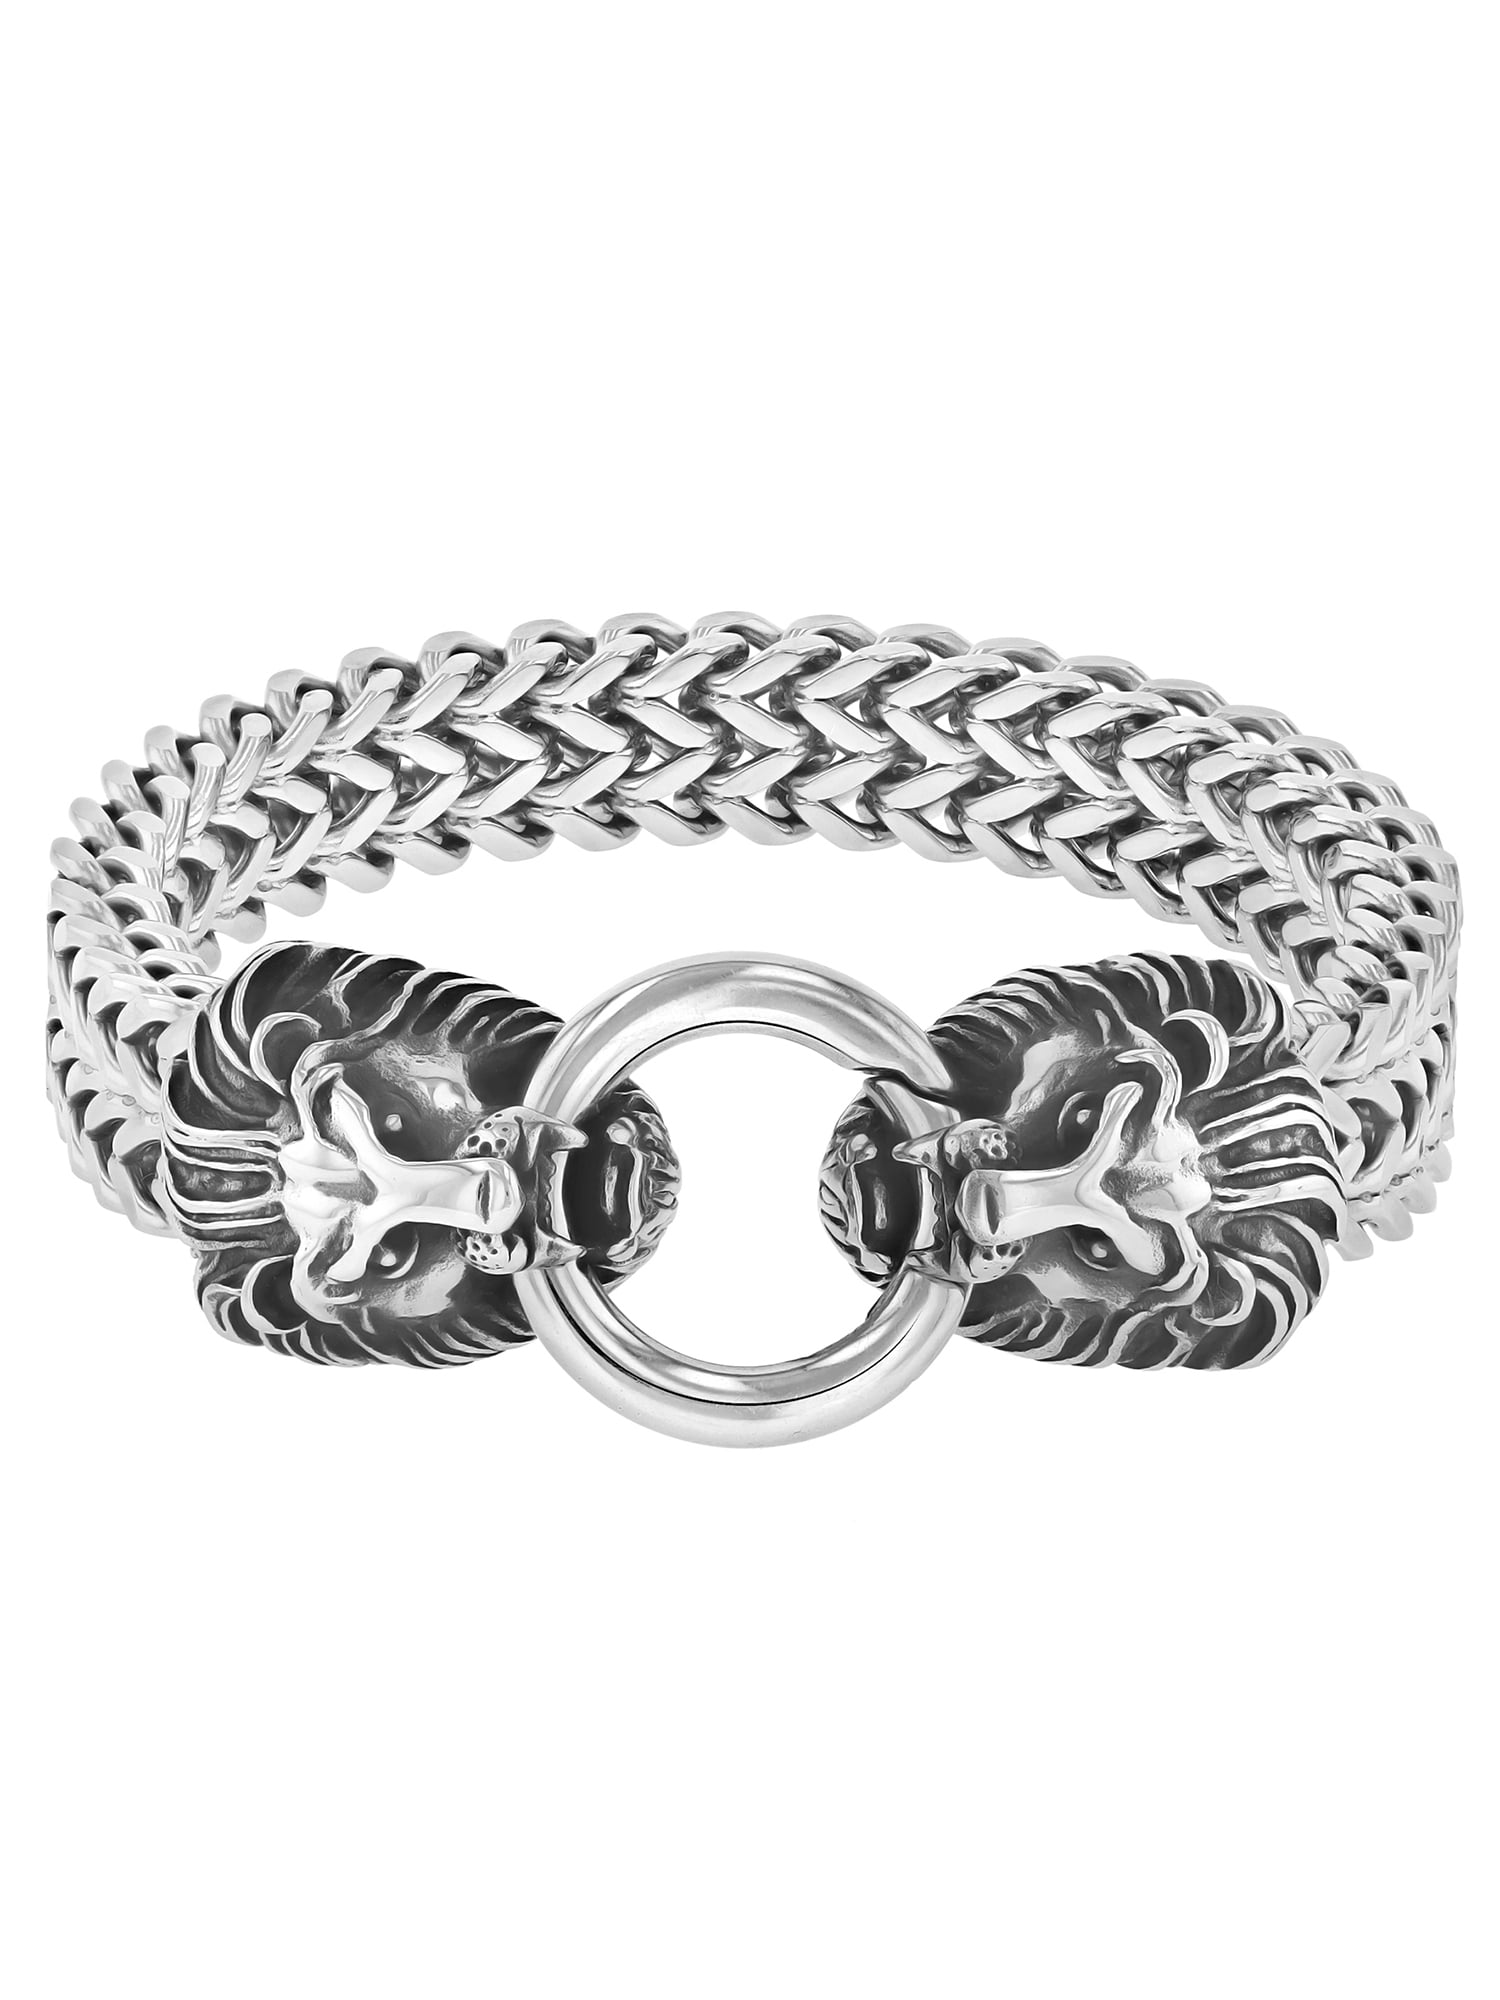 Mens Stainless Steel Bracelet Lions Head Chain Bracelet GNZ13USKLSL018 Gnzoe Jewelry